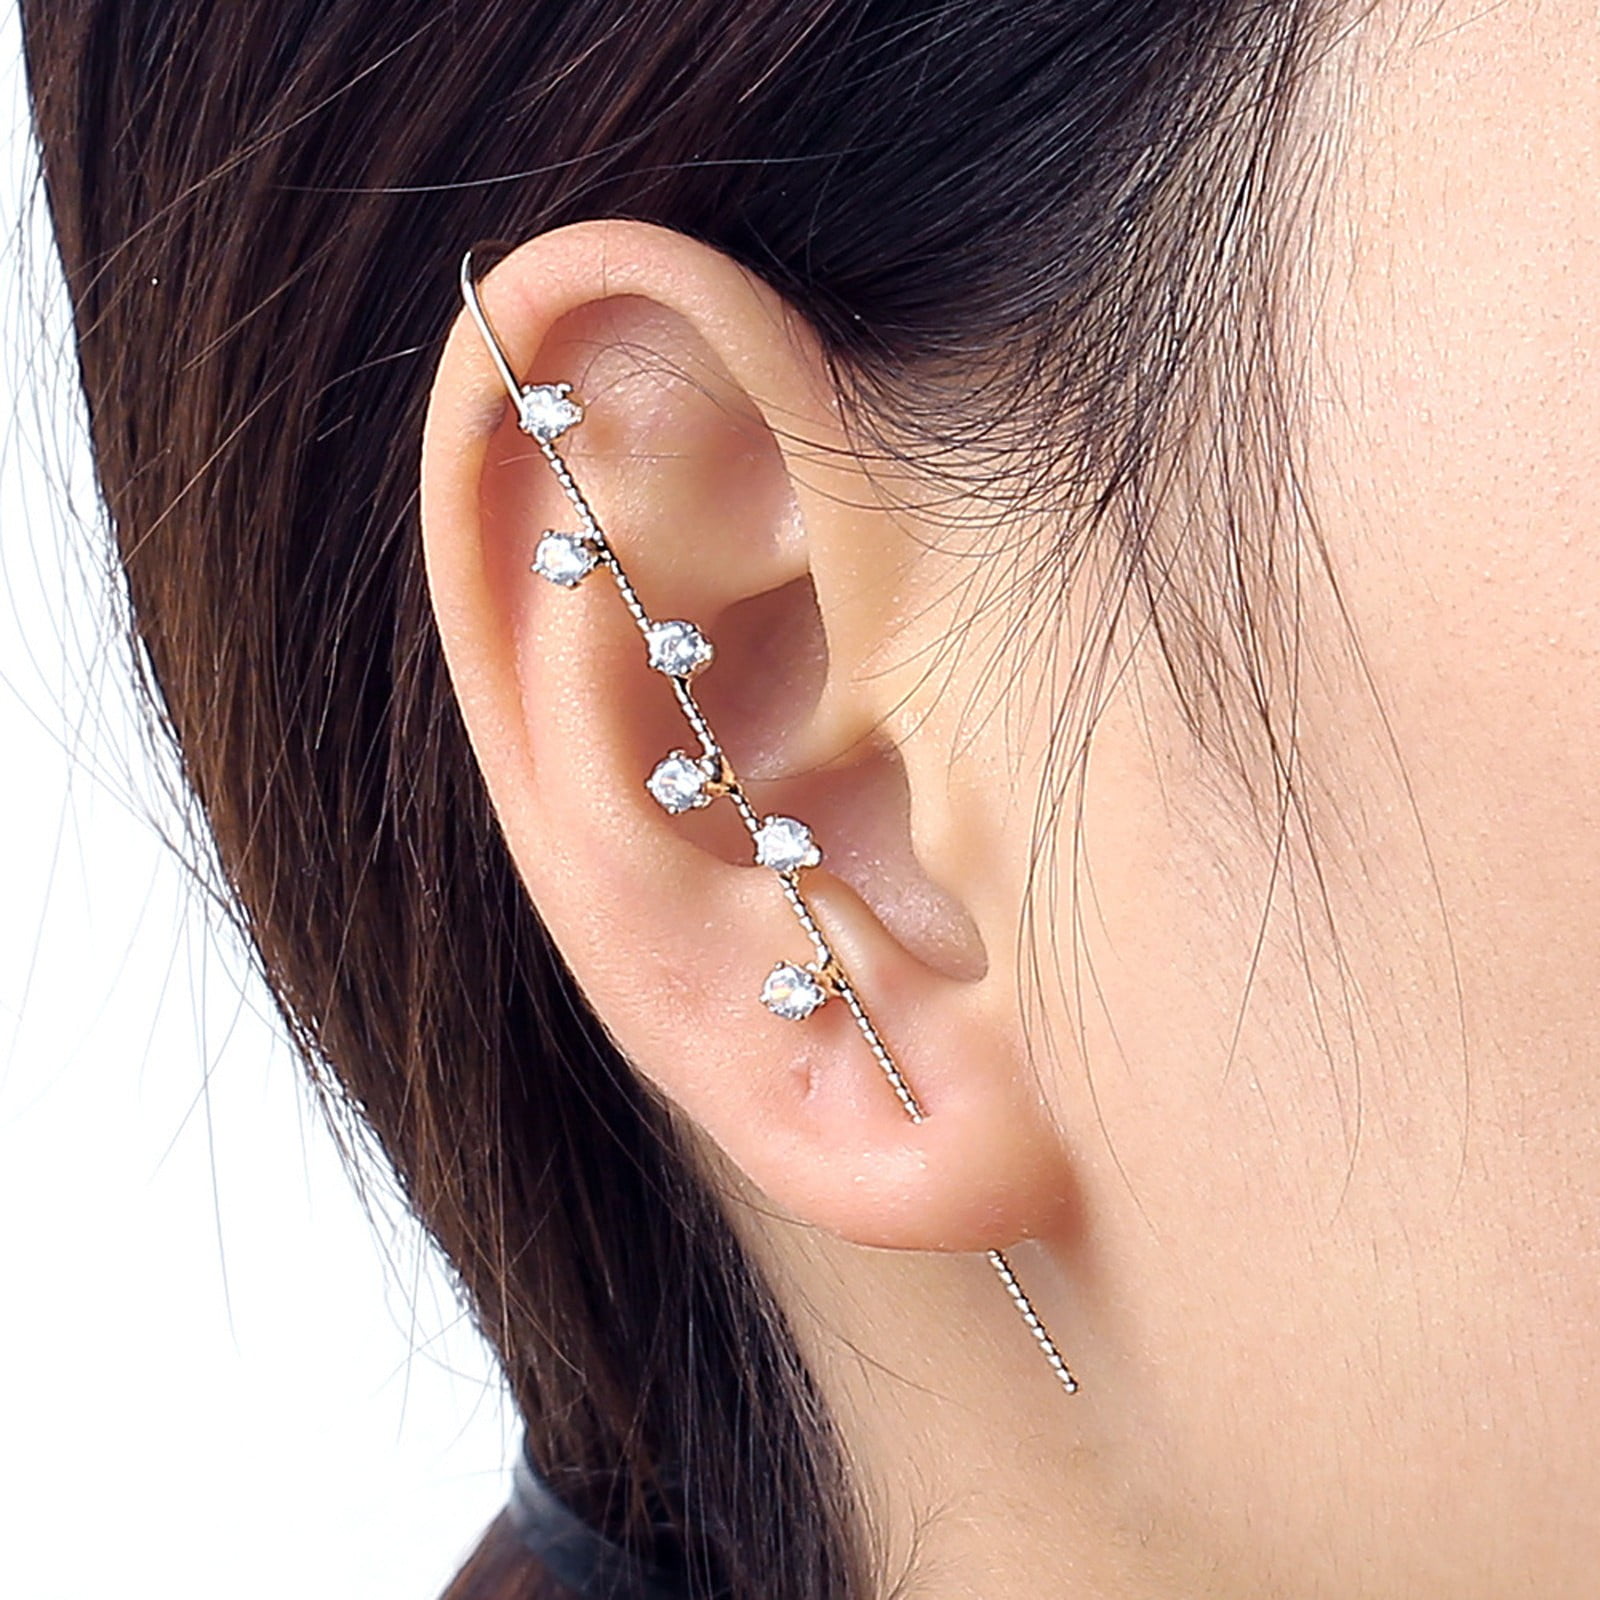 Chic Gold Silver Tone Dangling Star Tassel Ear Wrap Earring - Gold